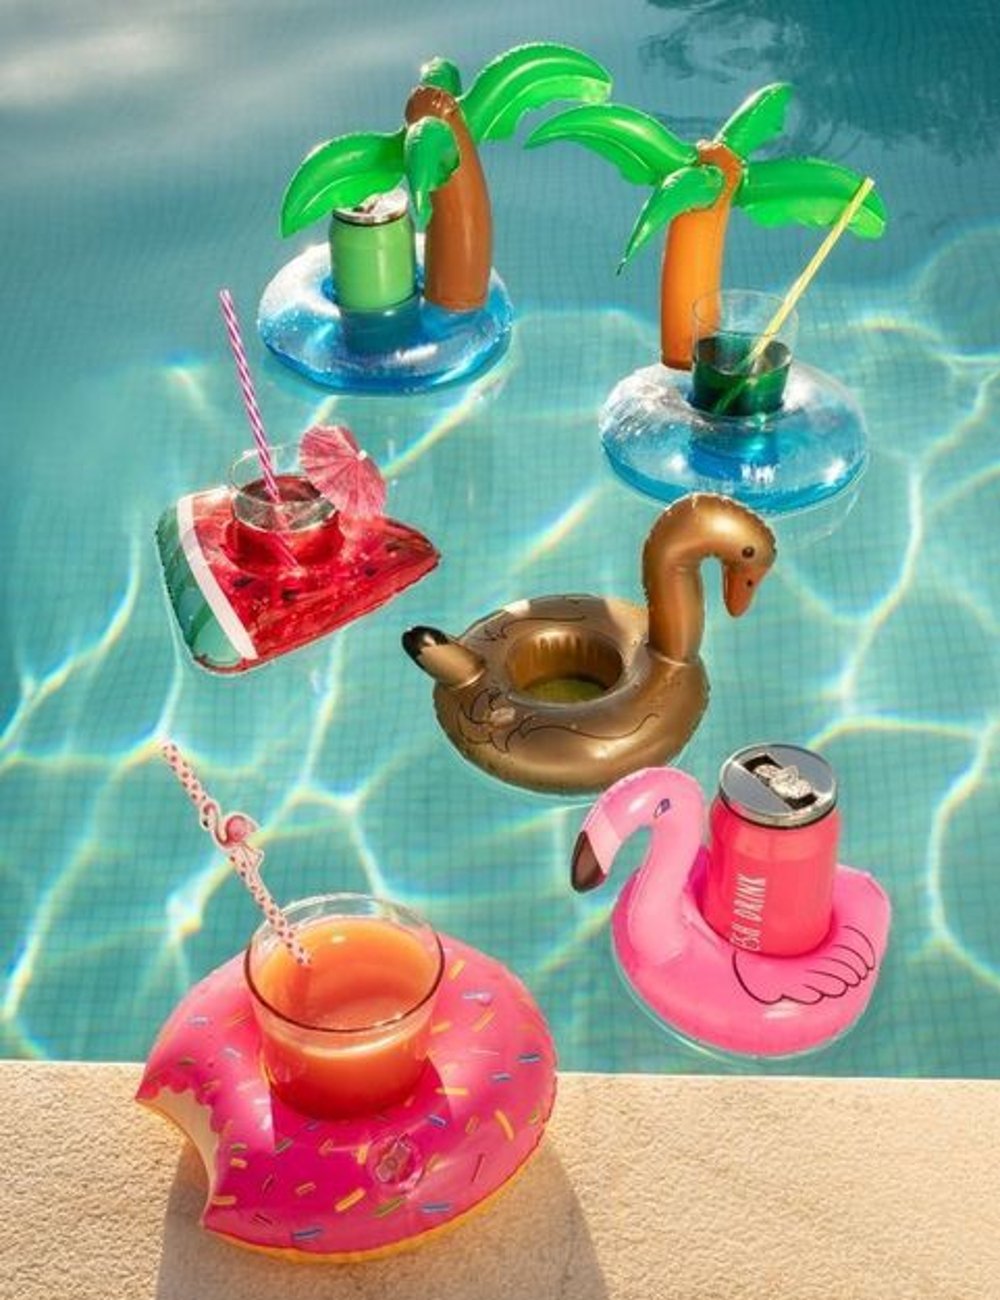 Pool party - festa - decor - verão  - piscina - https://stealthelook.com.br